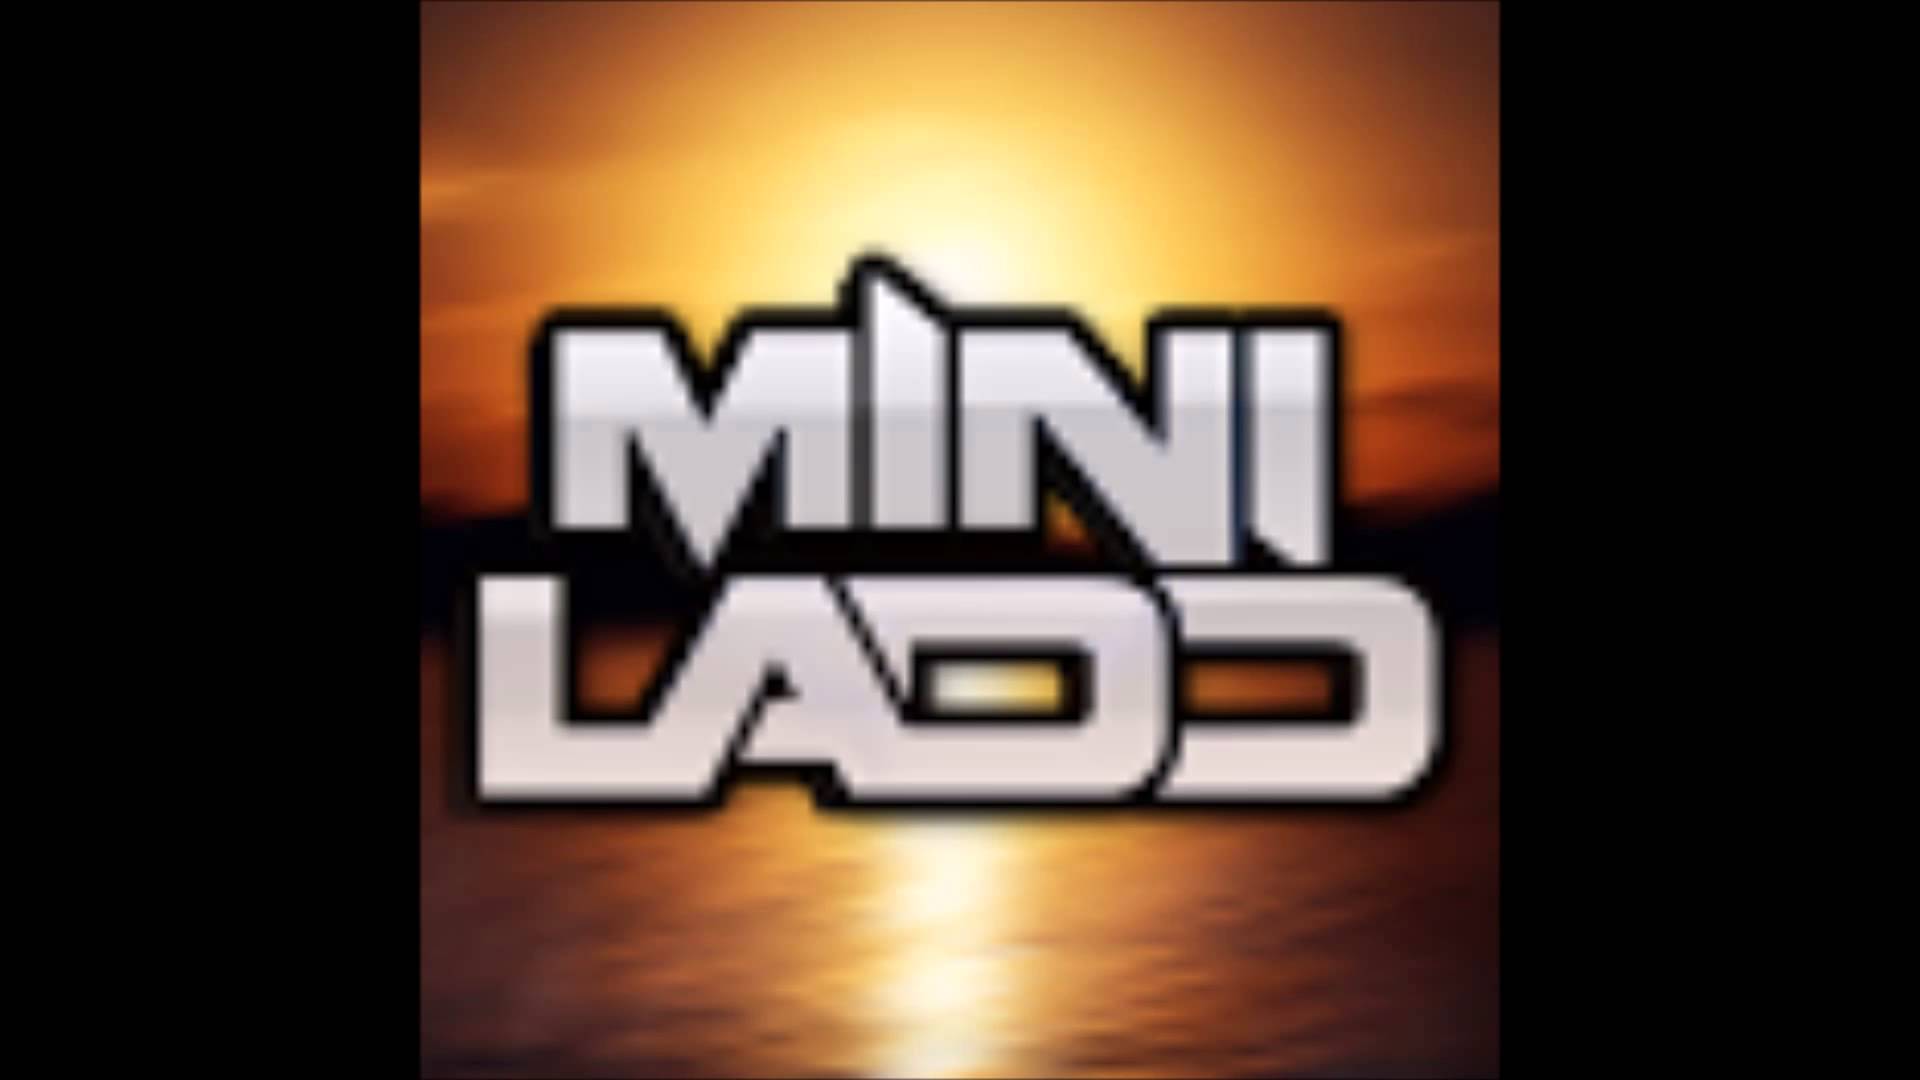 Ladd Logo - Mini Ladd Wallpaper